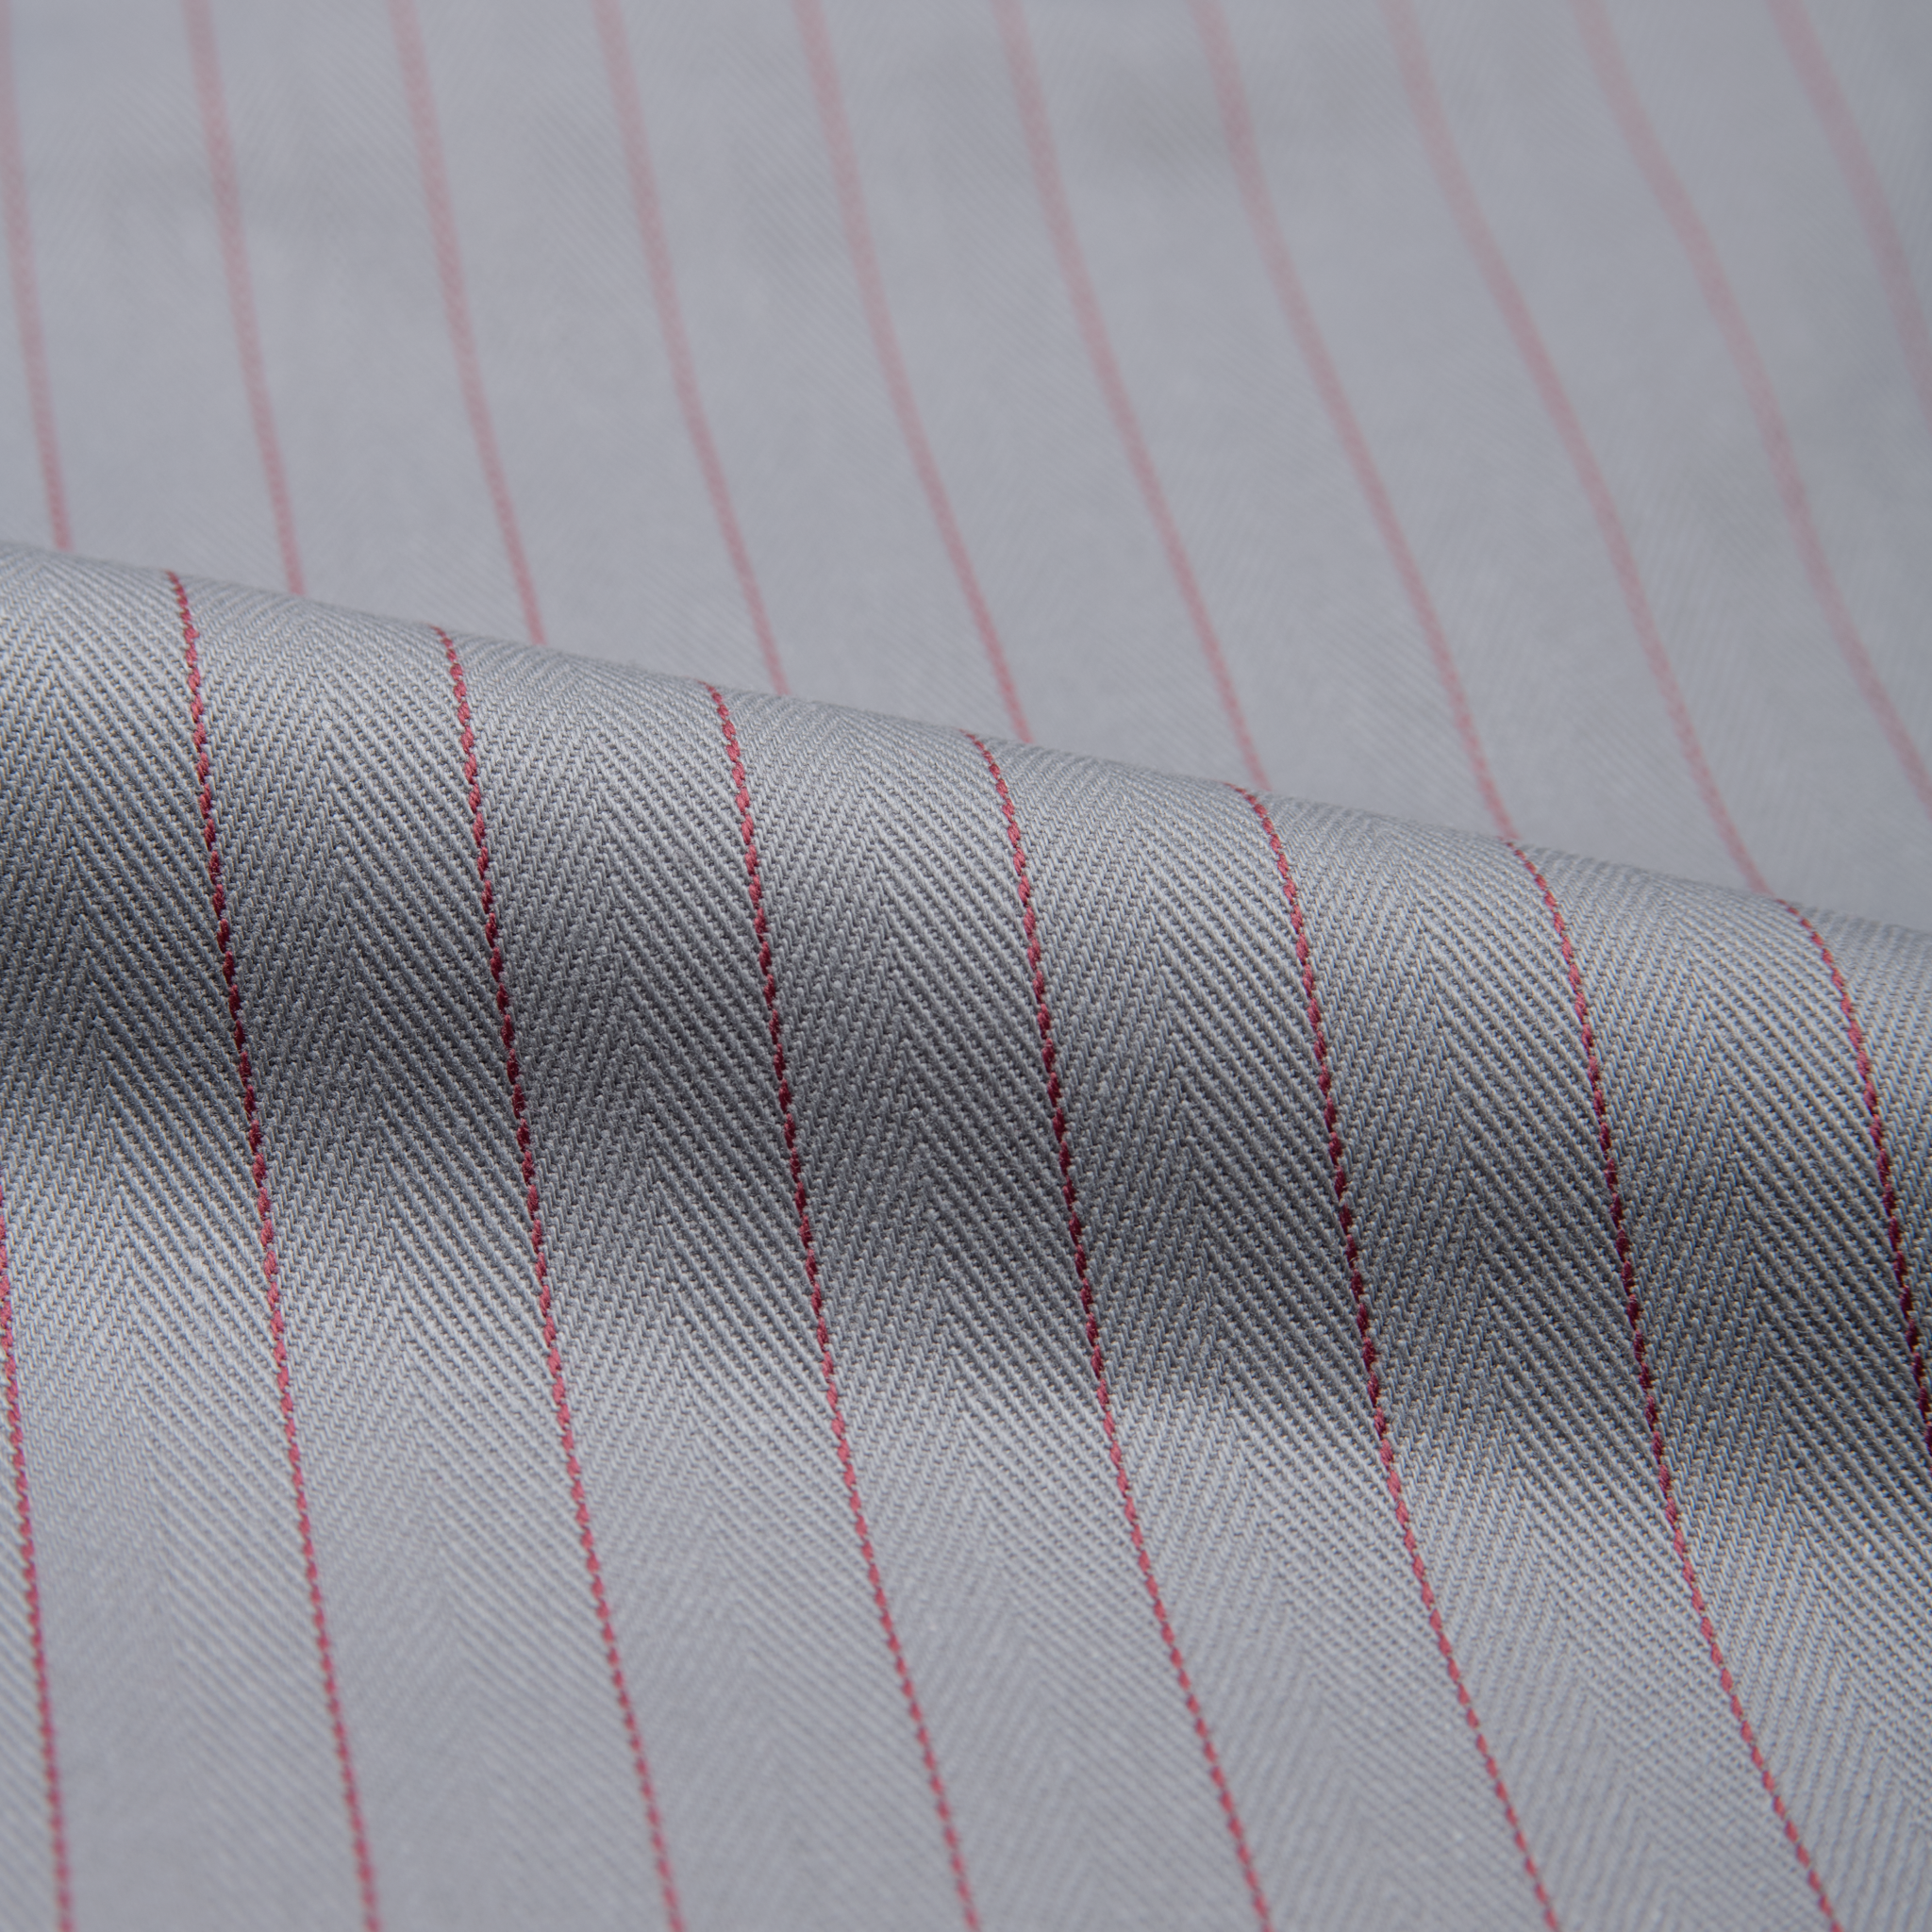  Work Pant - Repro Workwear Twill Grey - fabric 